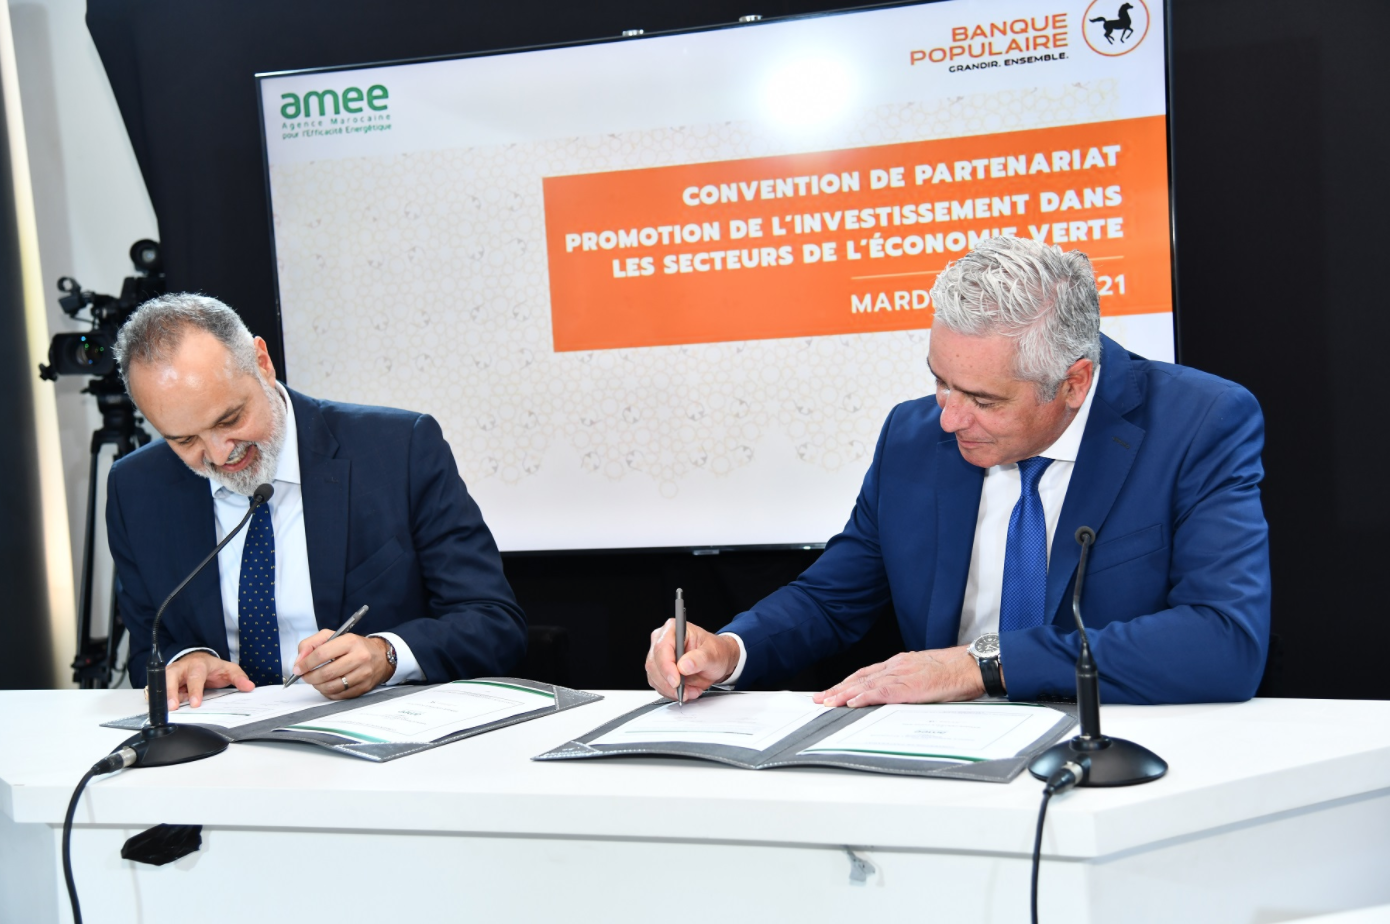 Economie verte: signature d'une convention de partenariat AMEE et le groupe BCP